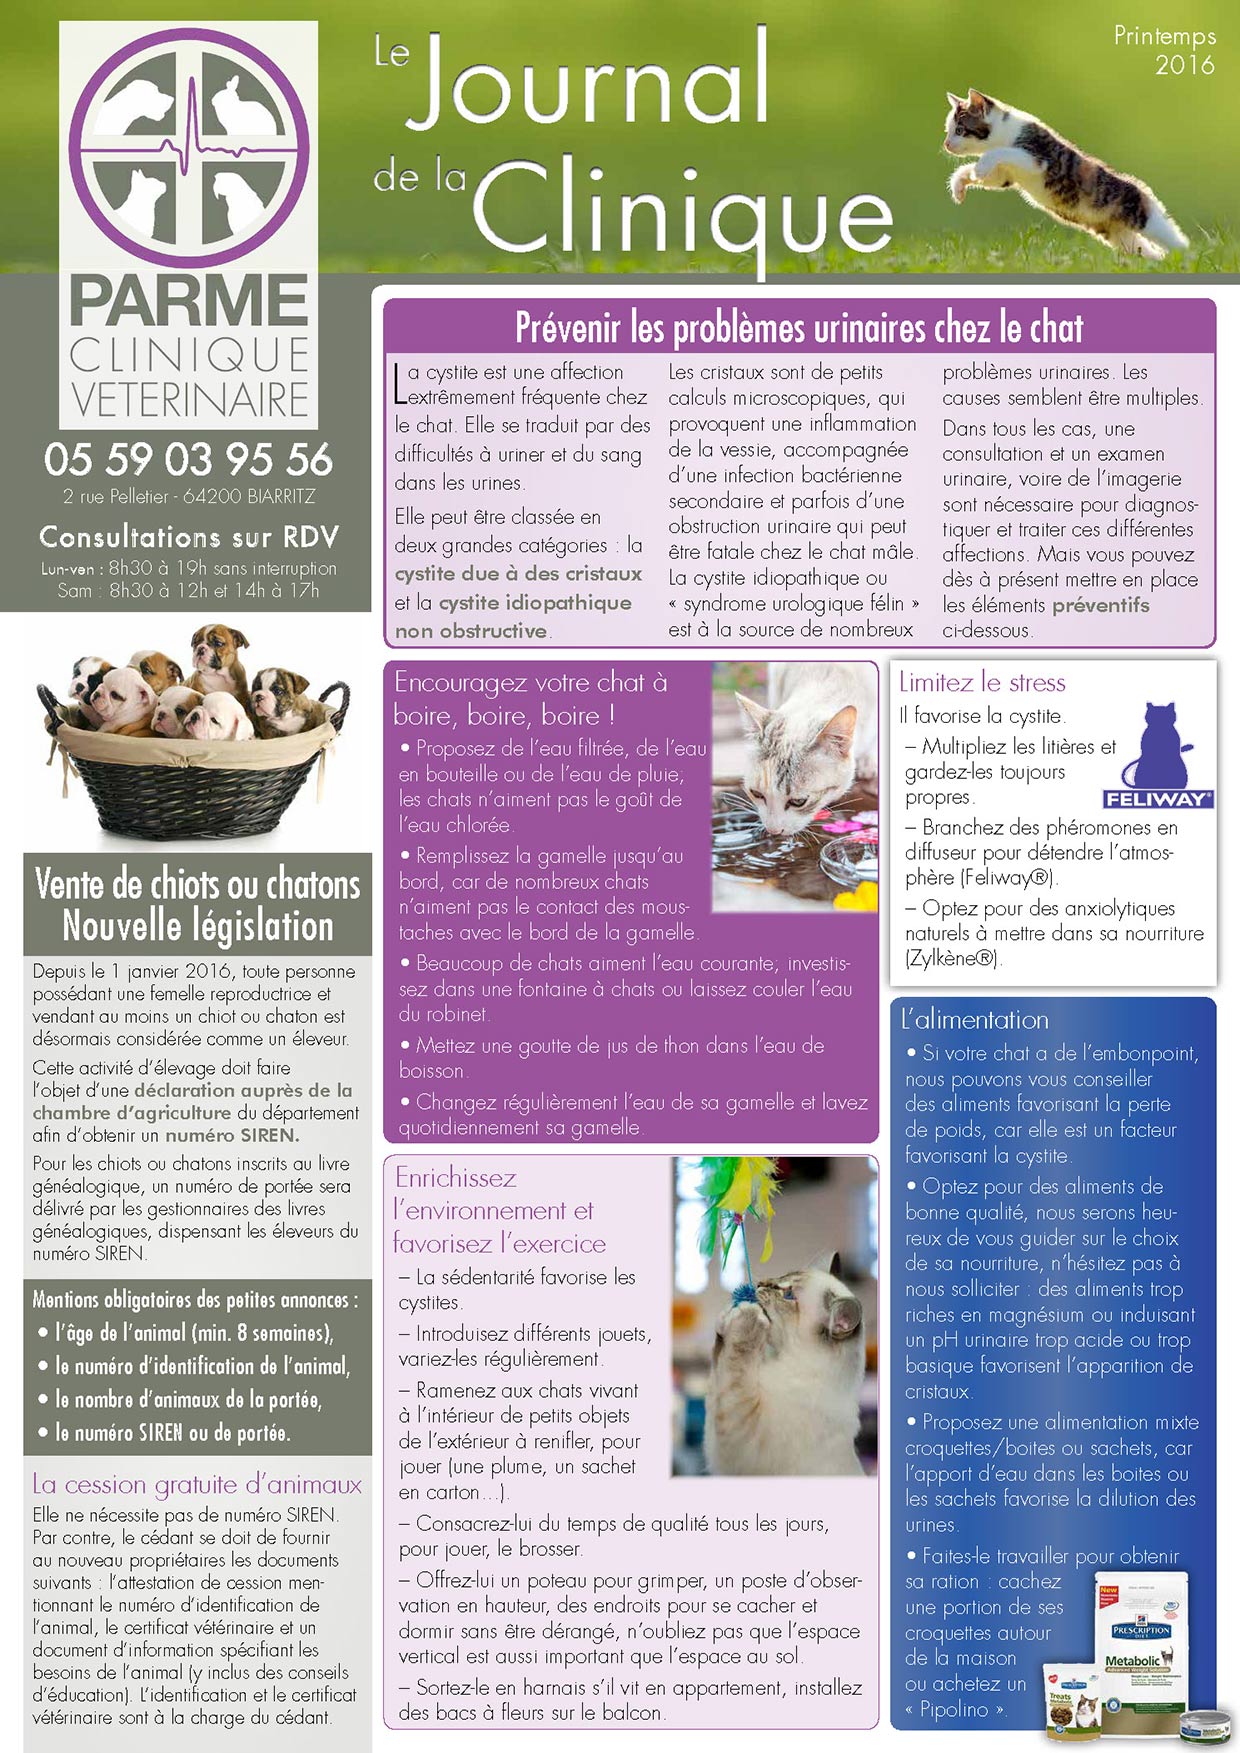 Journal de la Clinique - Printemps 2016 page 1